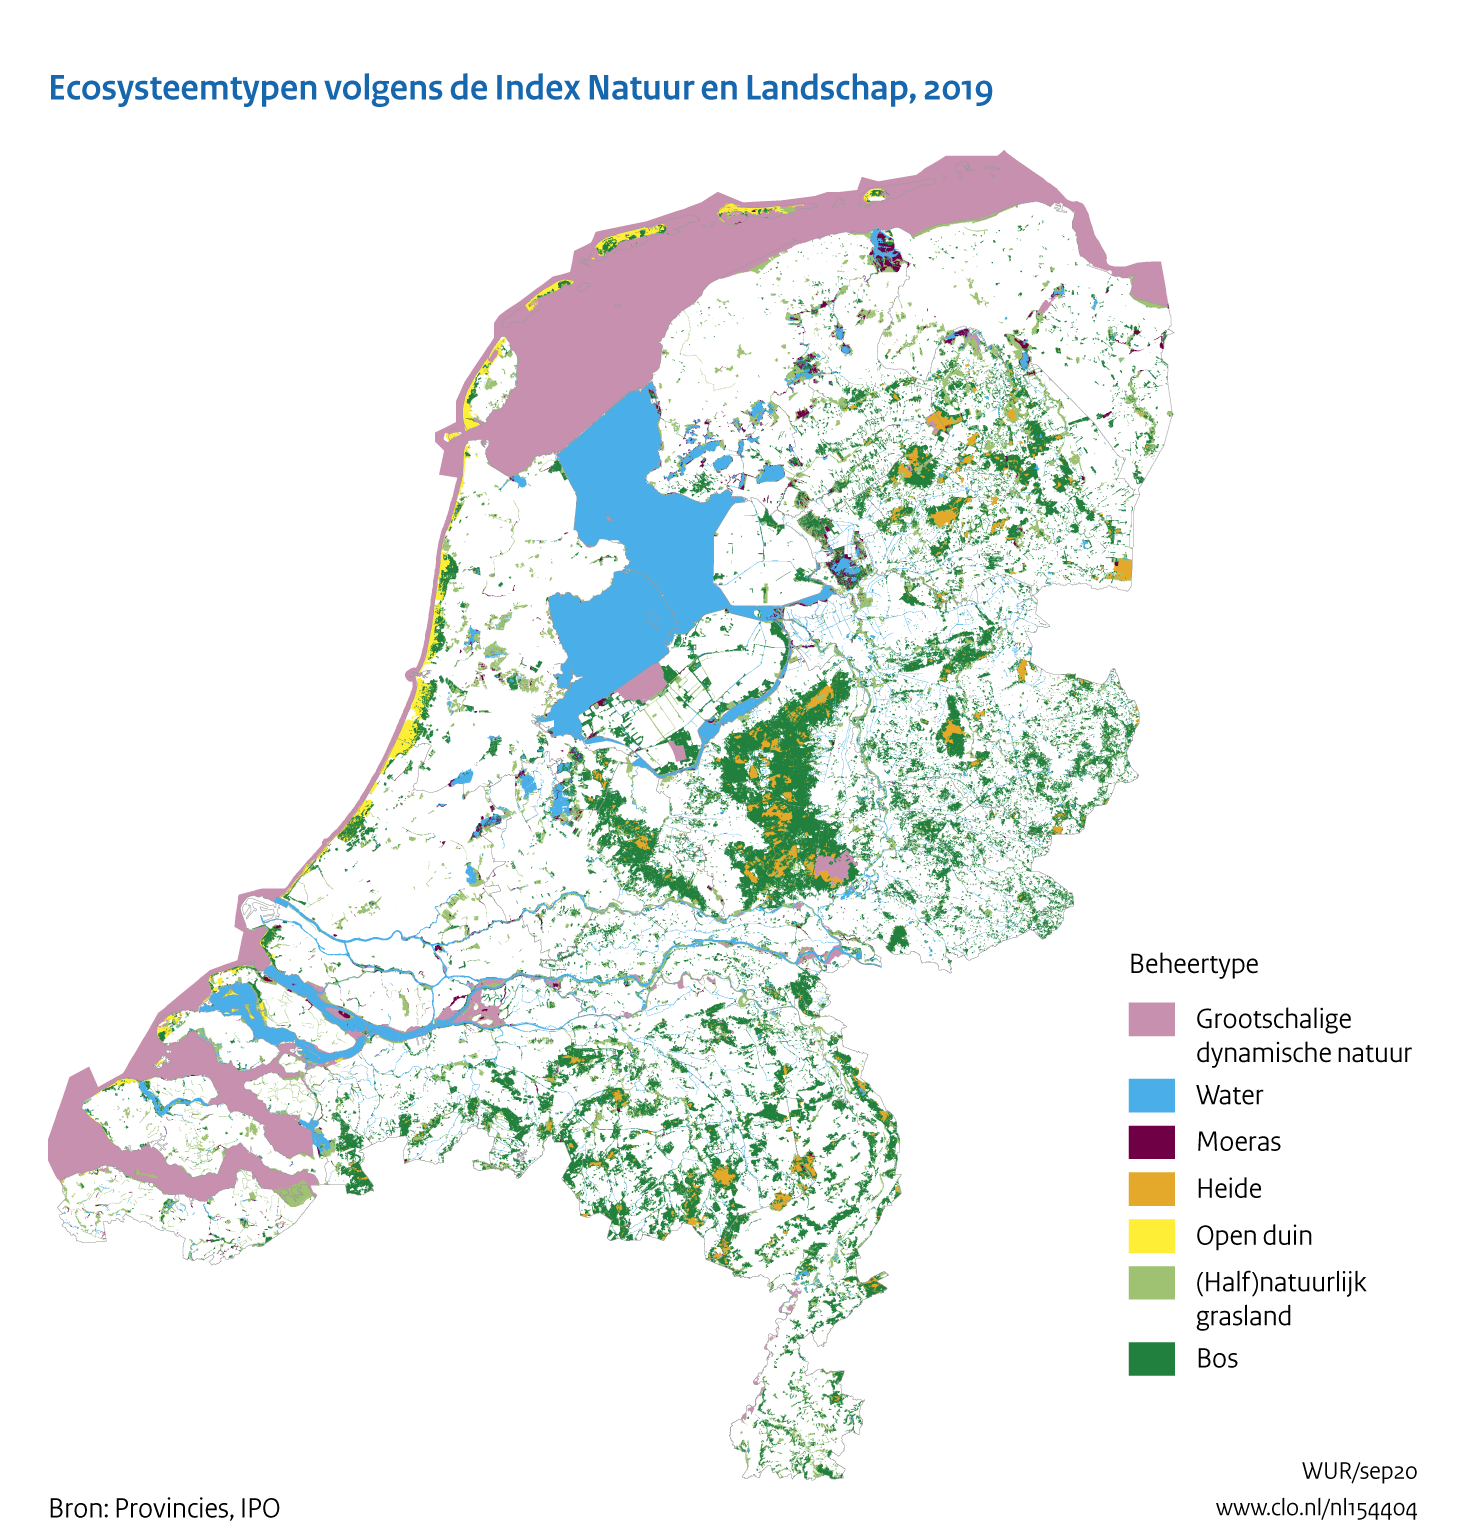 Figuur Ecosysteemtypen op basis van de Index NL. In de rest van de tekst wordt deze figuur uitgebreider uitgelegd.